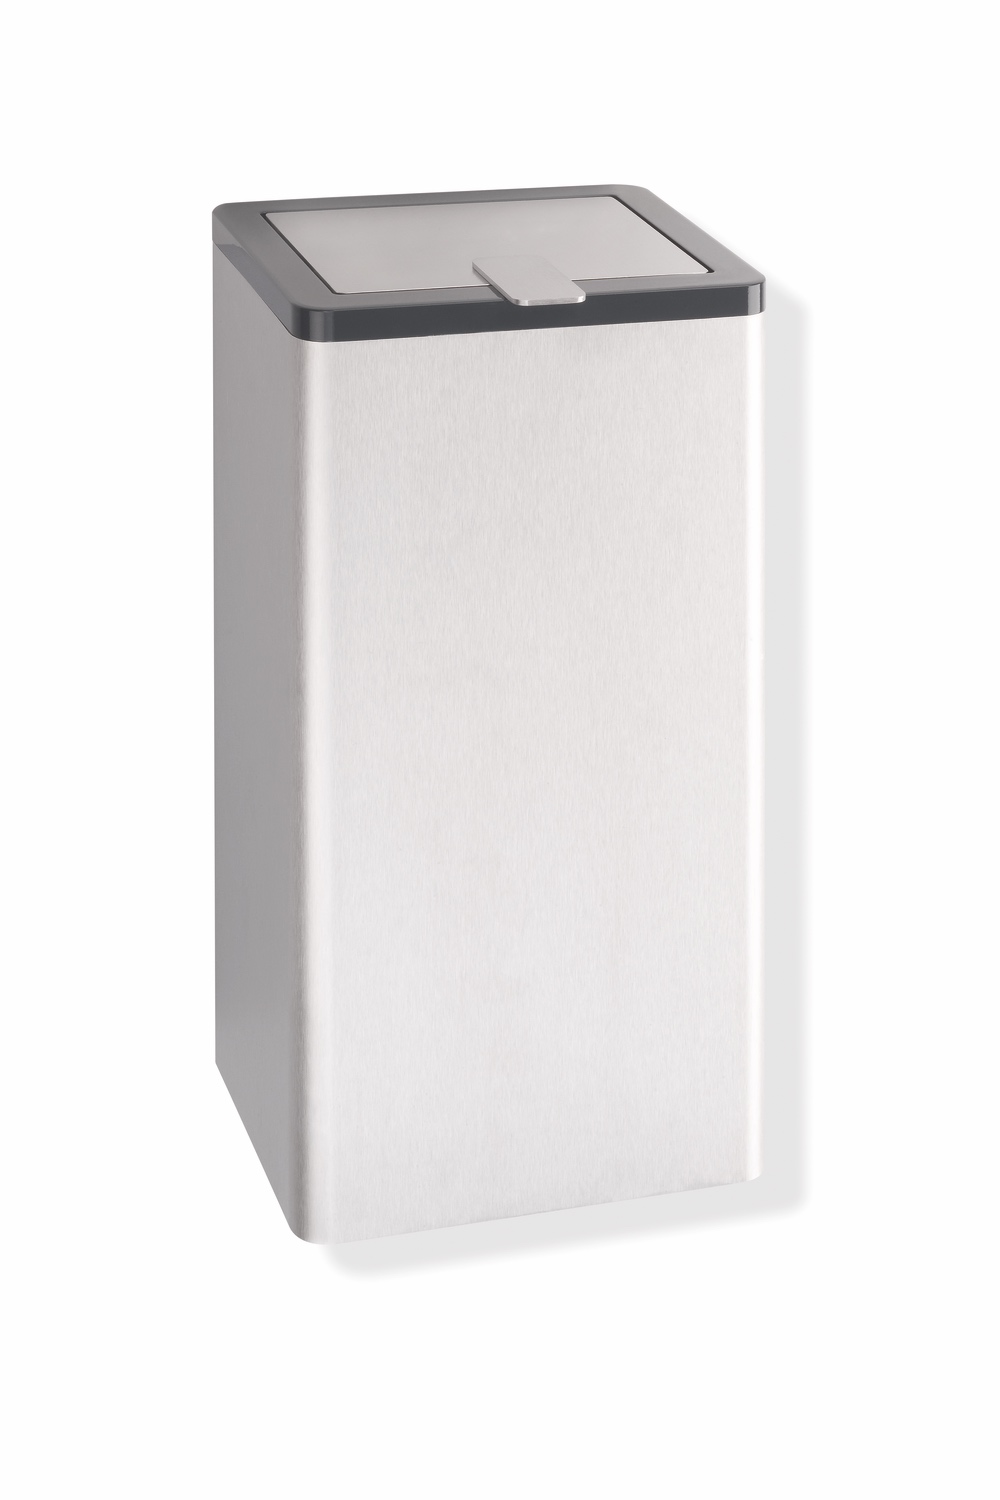 HEWI Hygieneabfallbehälter „Serie 805“ 15,1 cm